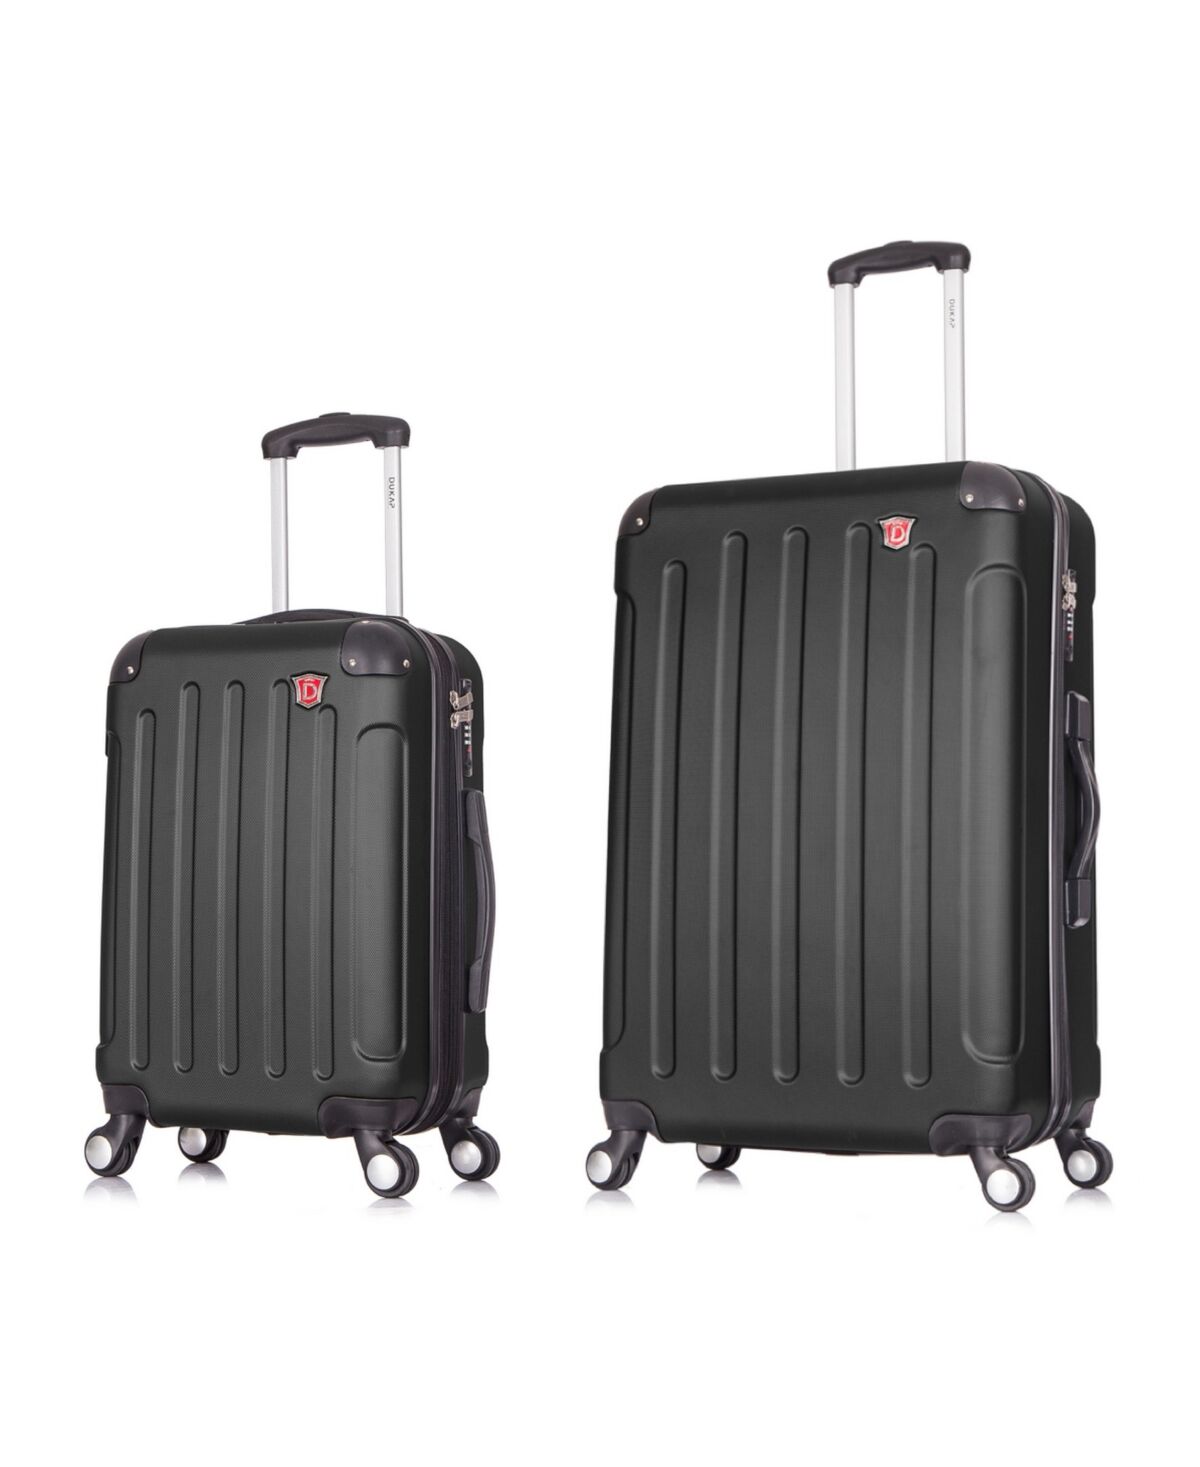 Dukap Intely 2-Pc. Hardside Luggage Set With Usb Port - Black